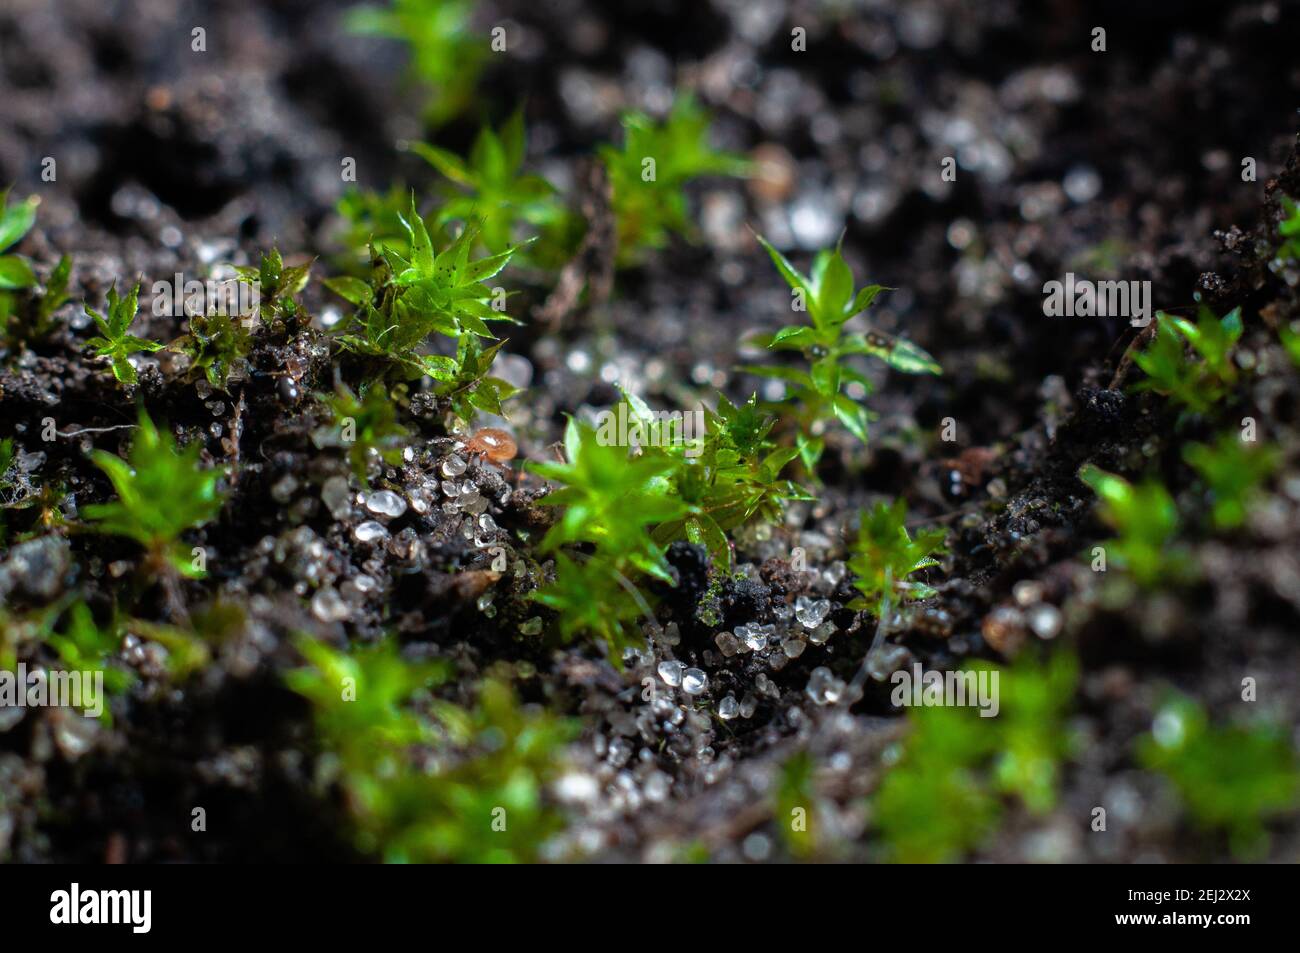 Moos wächst im Boden von Zimmerpflanzen aus nächster Nähe, Makrofotografie  Stockfotografie - Alamy